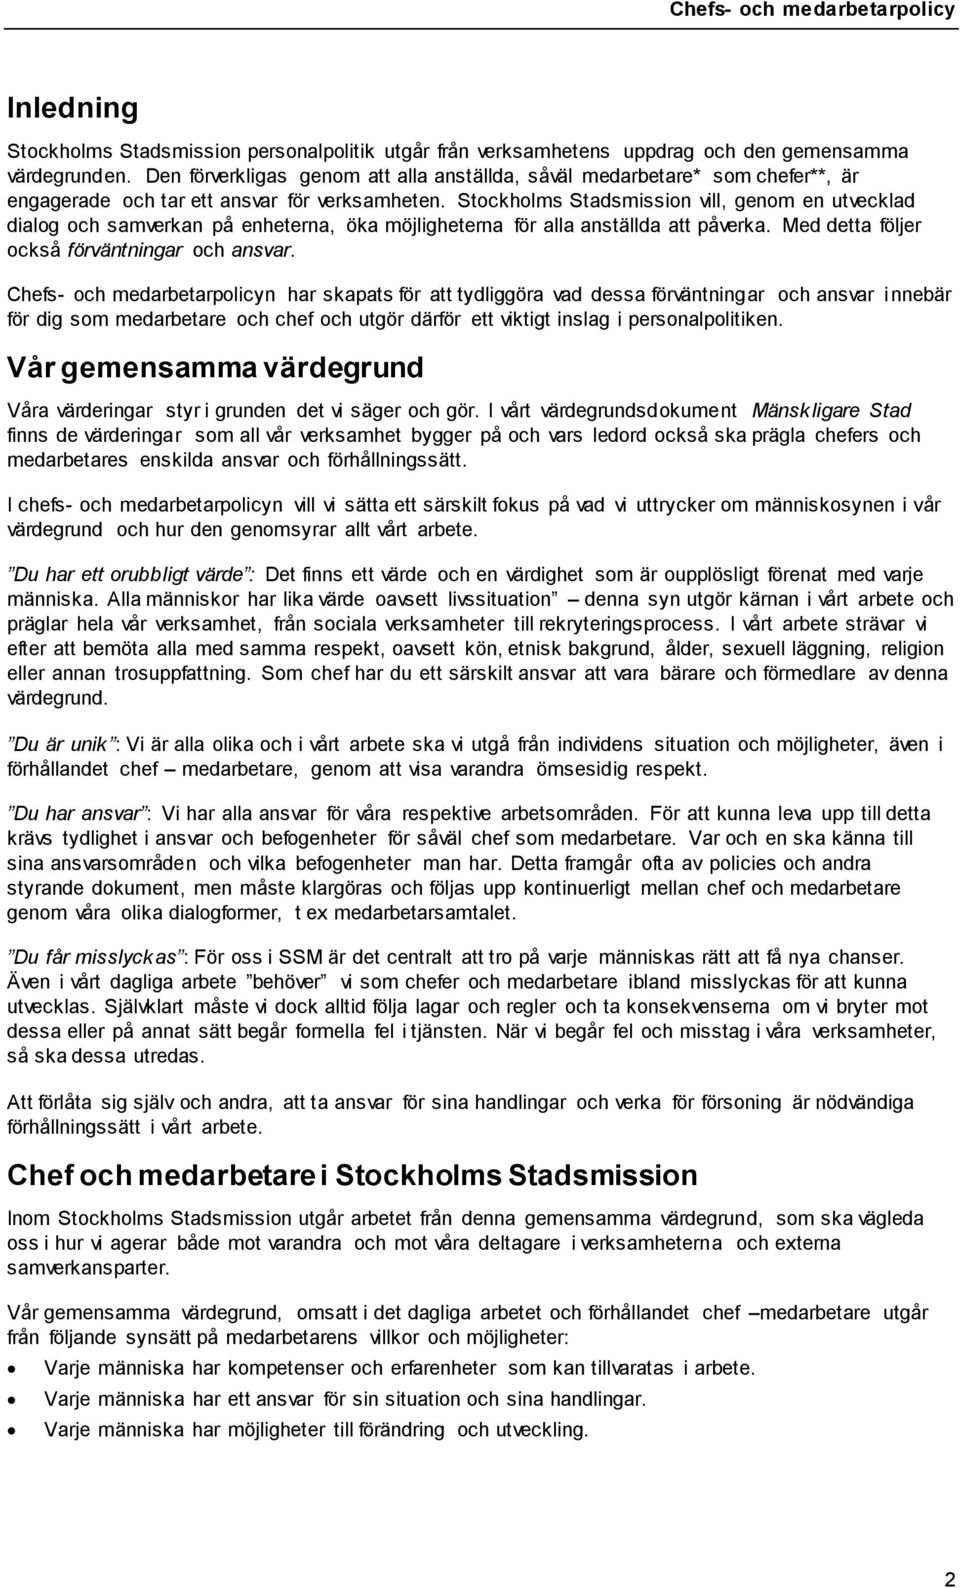 Stockholms Stadsmission vill, genom en utvecklad dialog och samverkan på enheterna, öka möjligheterna för alla anställda att påverka. Med detta följer också förväntningar och ansvar.